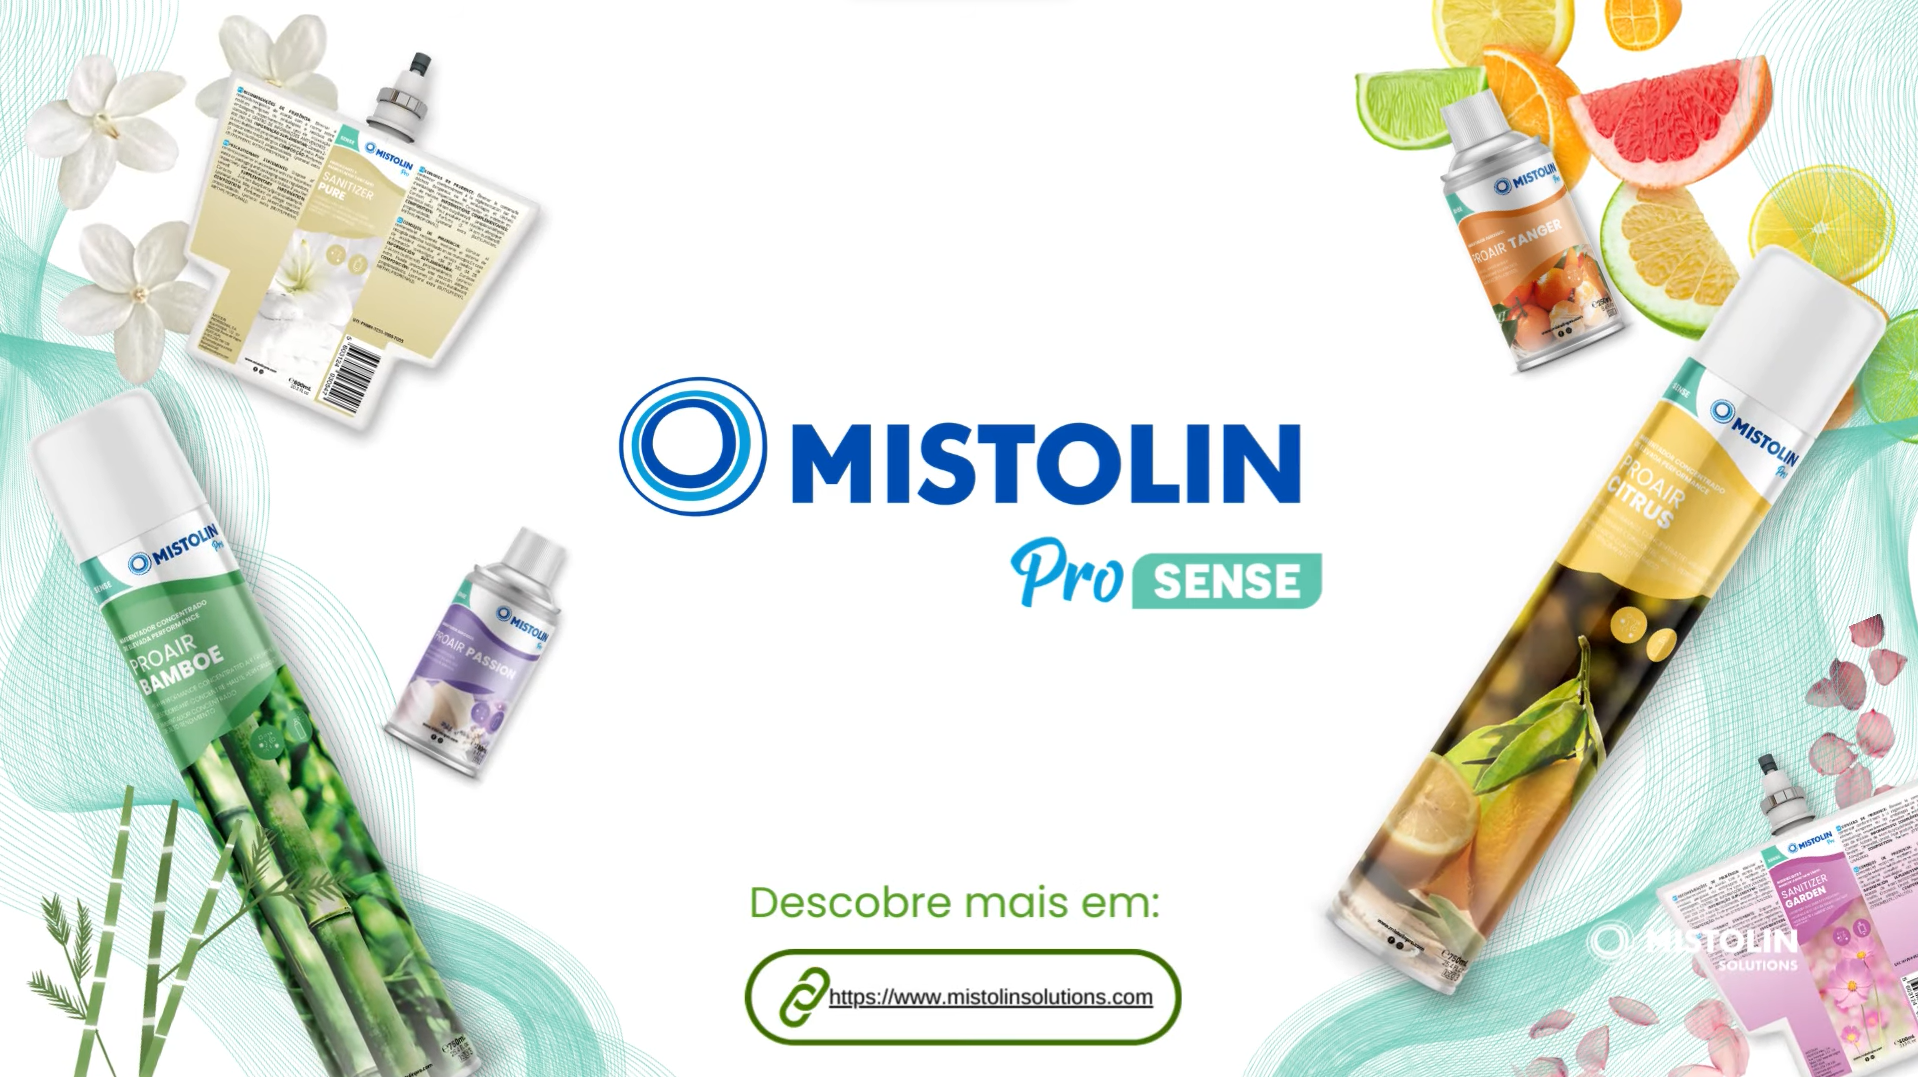 Carregar vídeo: Mistolin Pro Sense - apresentação da gama